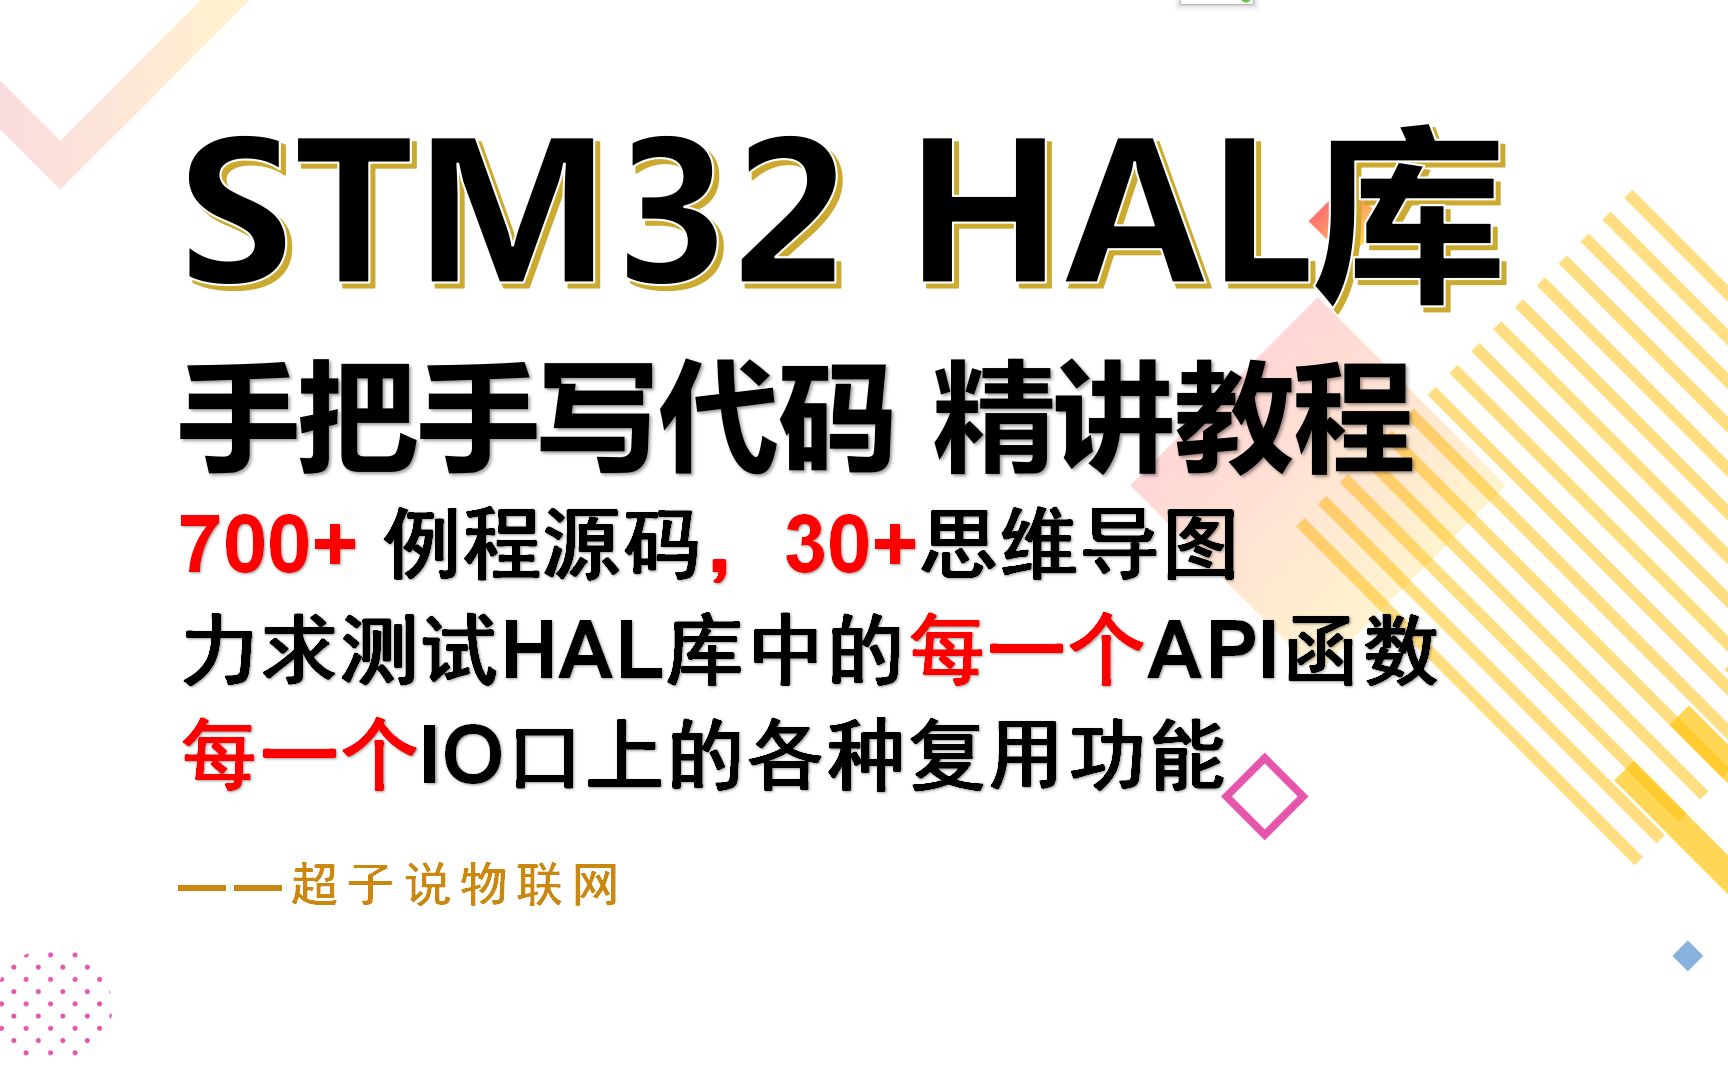 STM32 HAL库精讲入门教程 手把手写程序_——基础篇共238节【已完结】